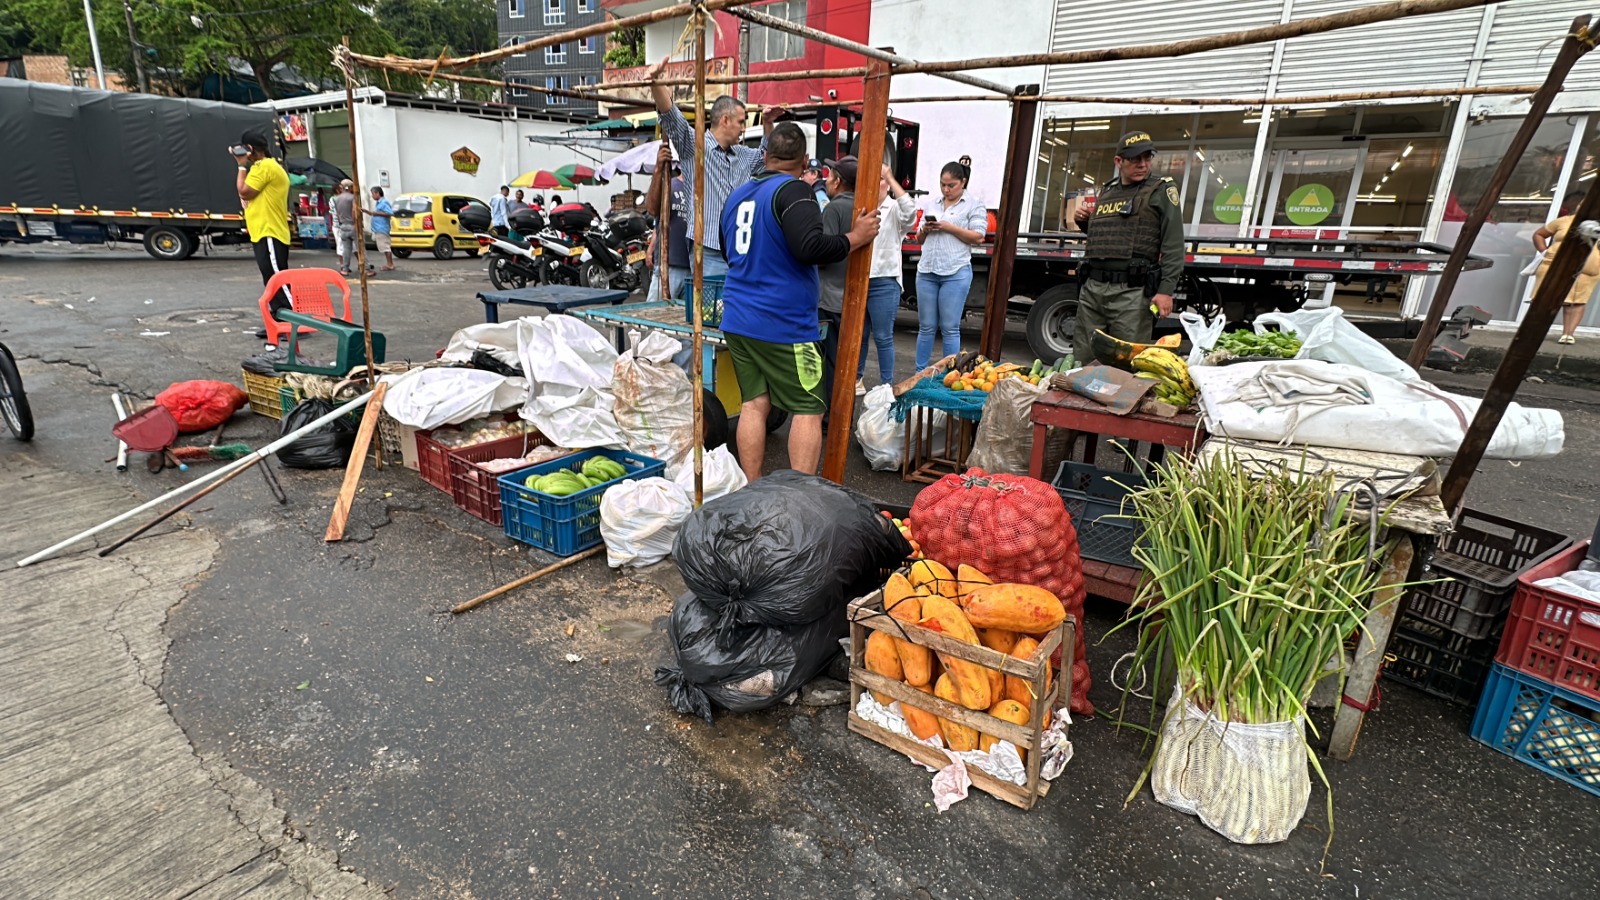 Control de sensibilización a vendedores y transportadores informales del  barrio Colorados llevó a cabo la Alcaldía de Bucaramanga